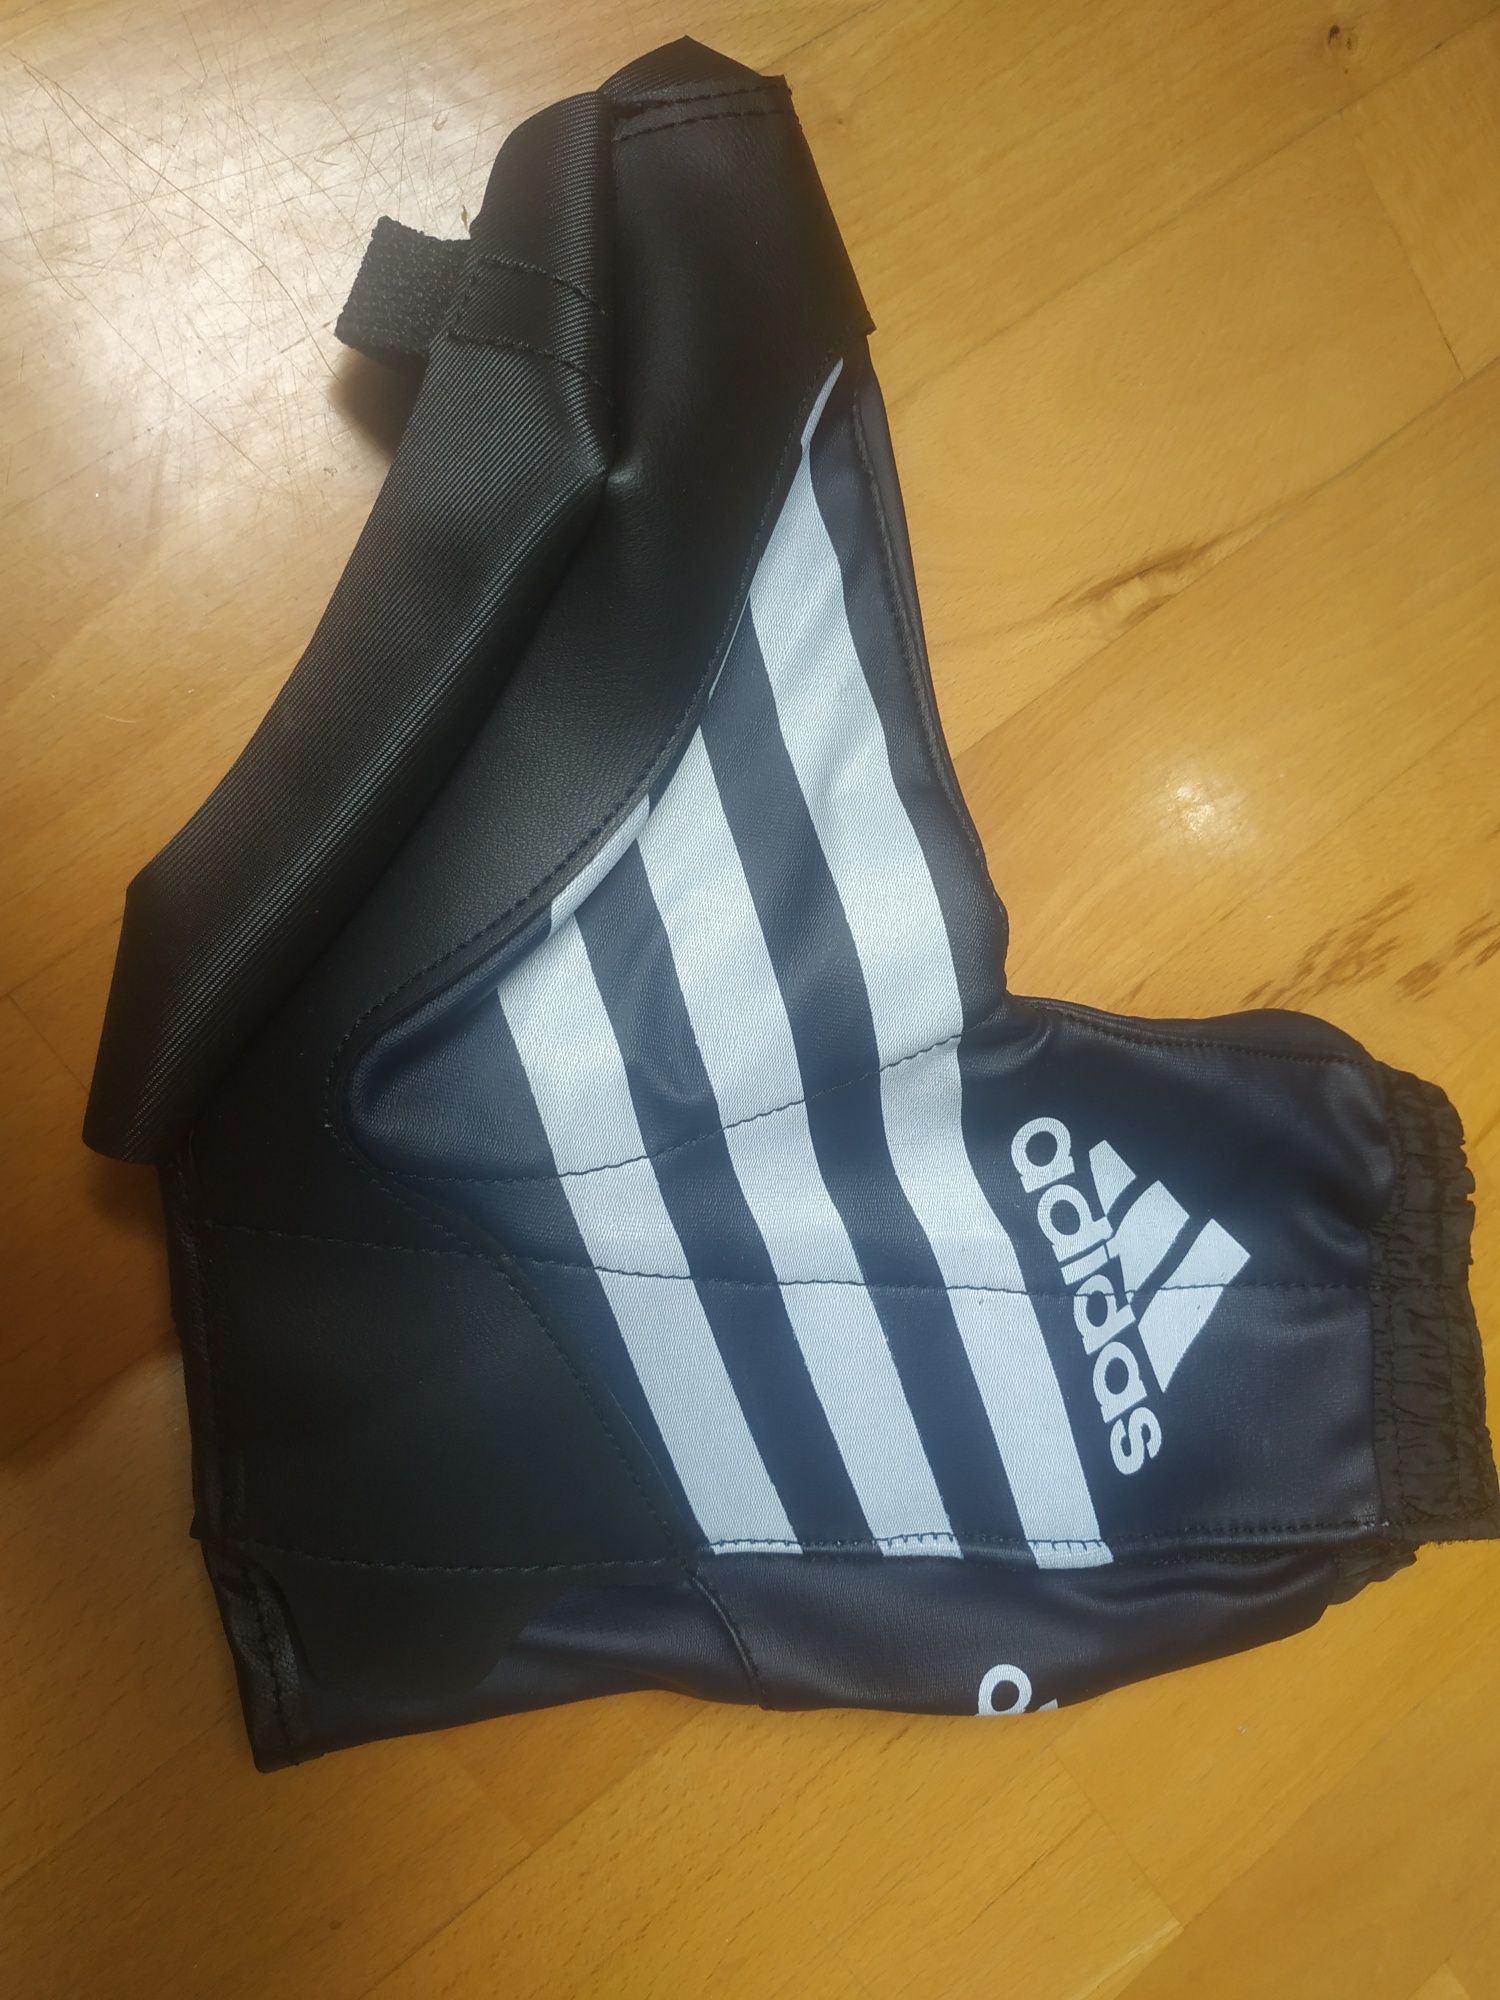 Adidas oryginalne ochraniacze na łyżwy 40 2/3